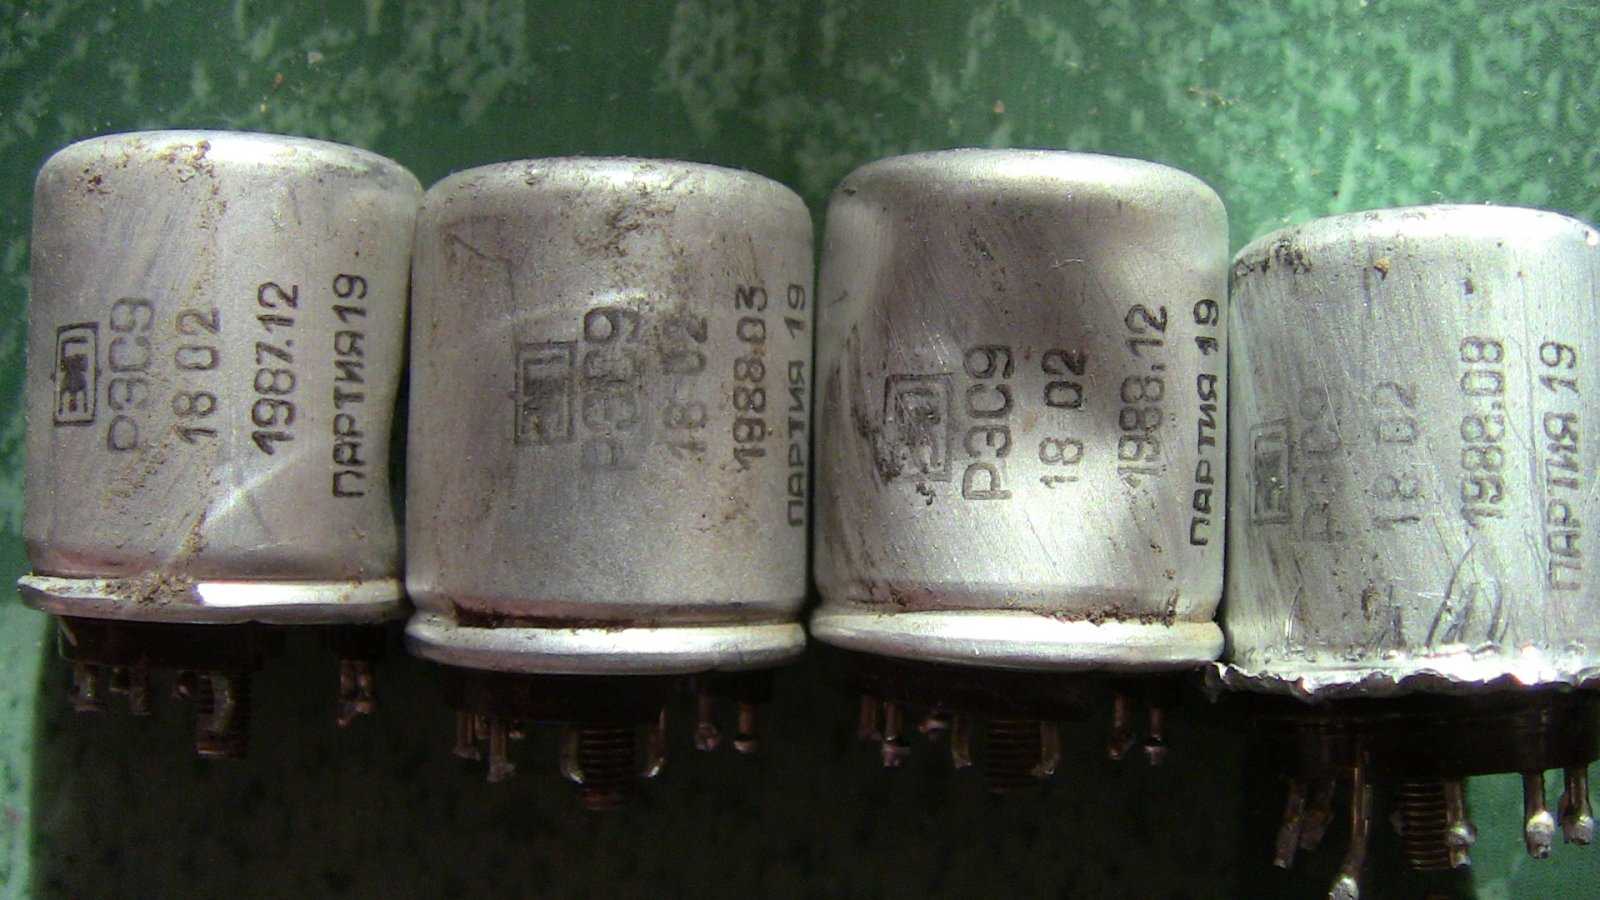 4 33 31 п. Конденсатор к31-11-3. Реле РЭС 8 драгметаллы. Н70 4700 конденсатор. 6800 Н70 конденсатор.